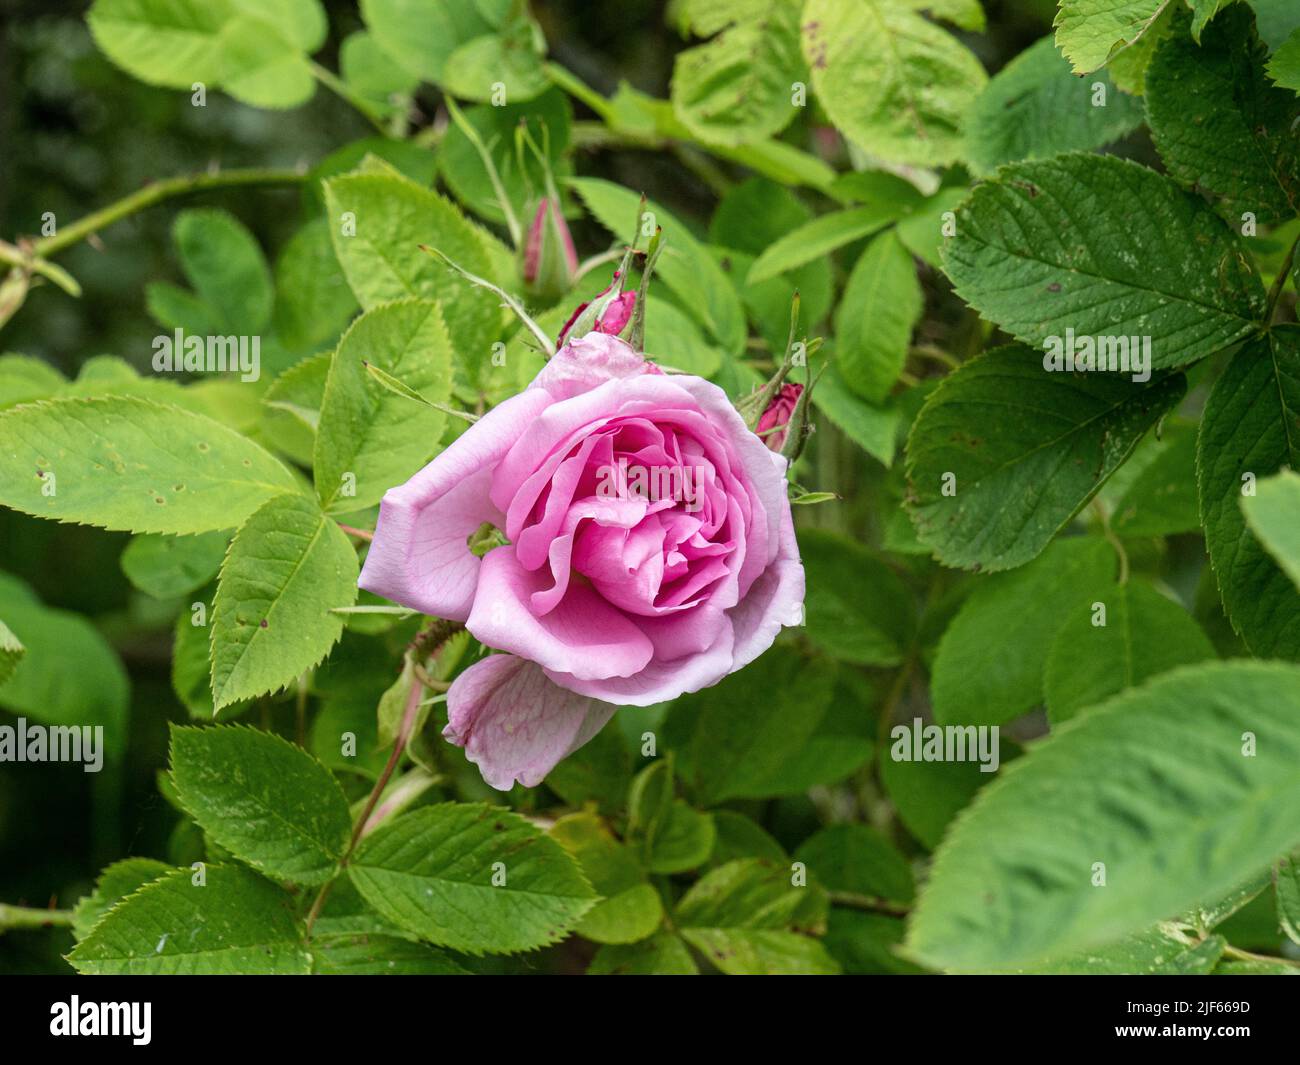 Un primer plano de la flor rosada de Rosa damascena 'Quatro Saissons' contra el follaje verde brillante. Foto de stock